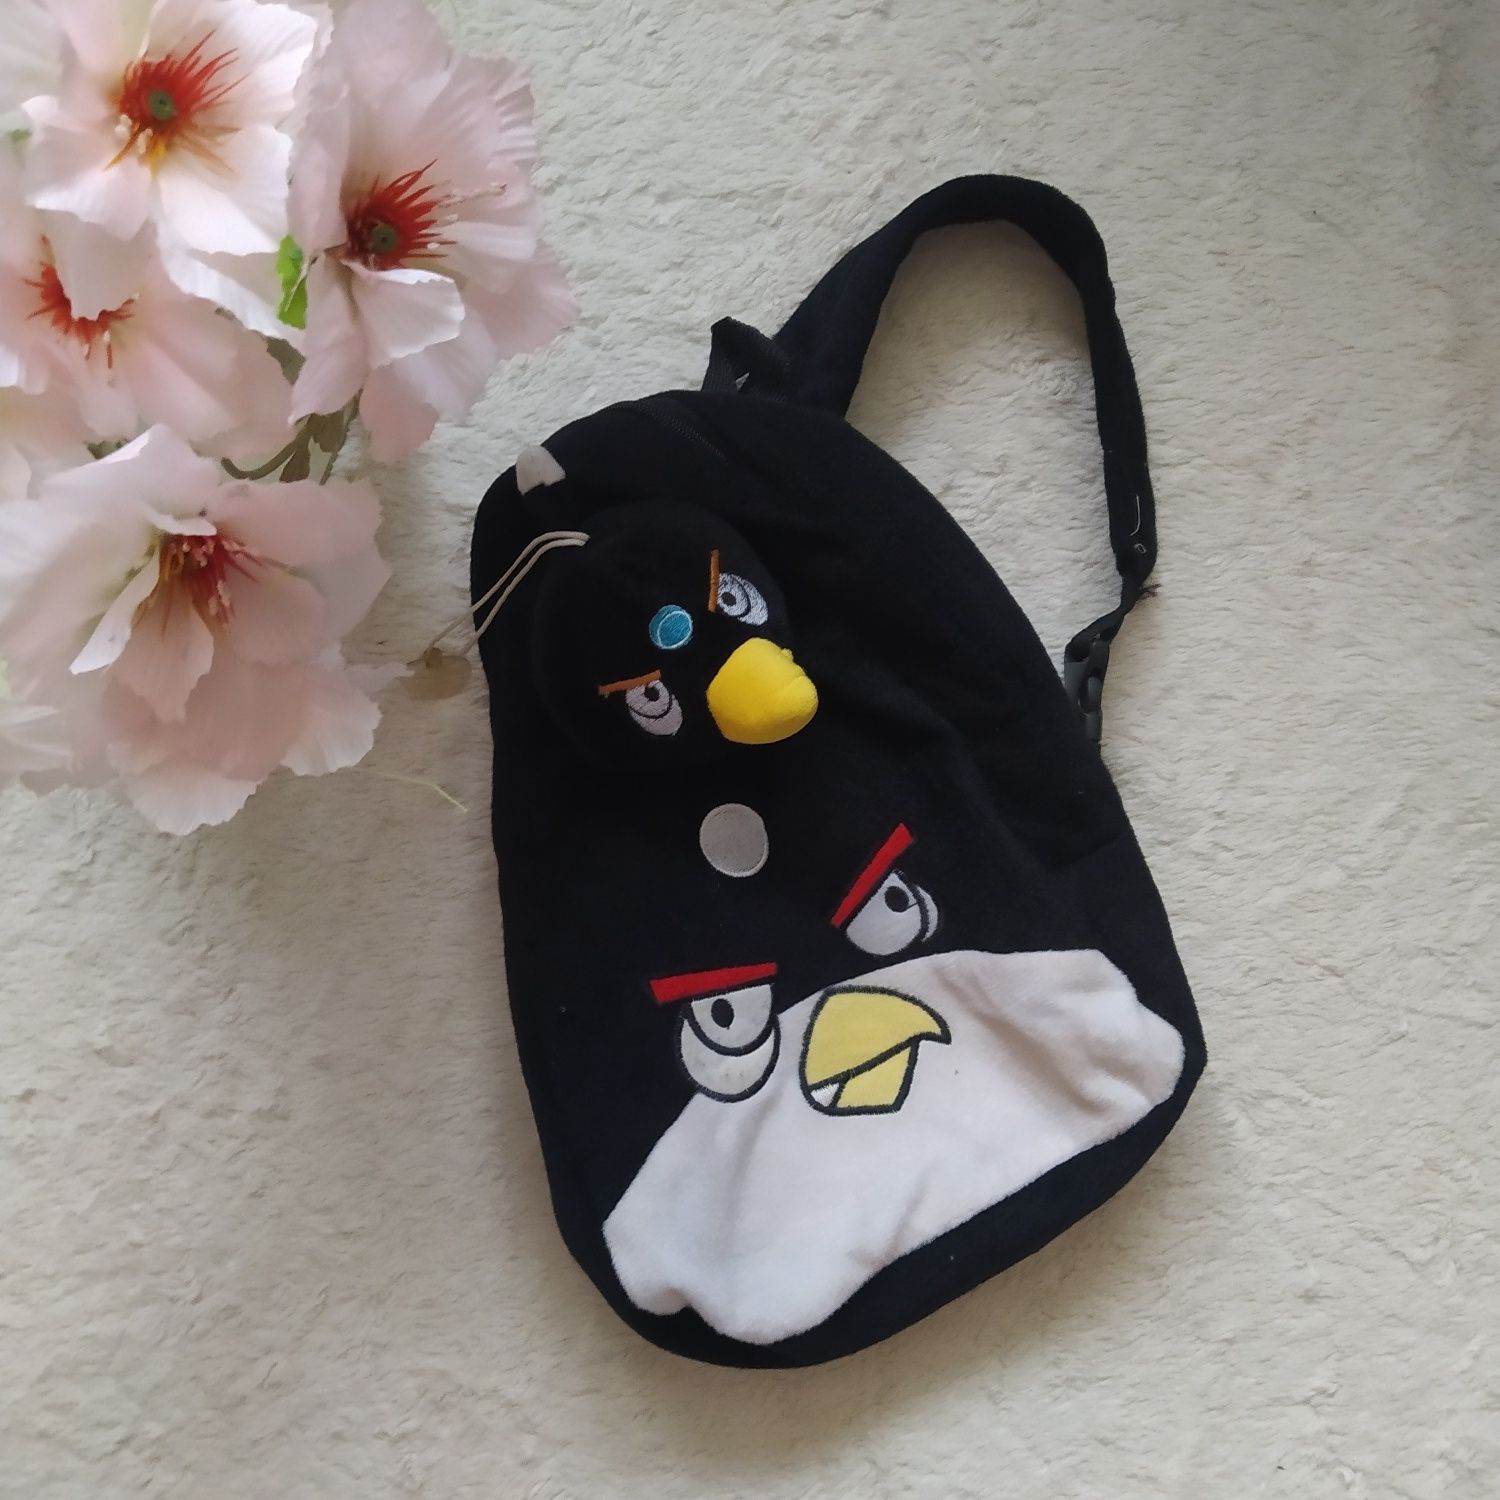 Pluszowy plecak Angry Birds czarna Bomba zimowy miękki dla chłopca